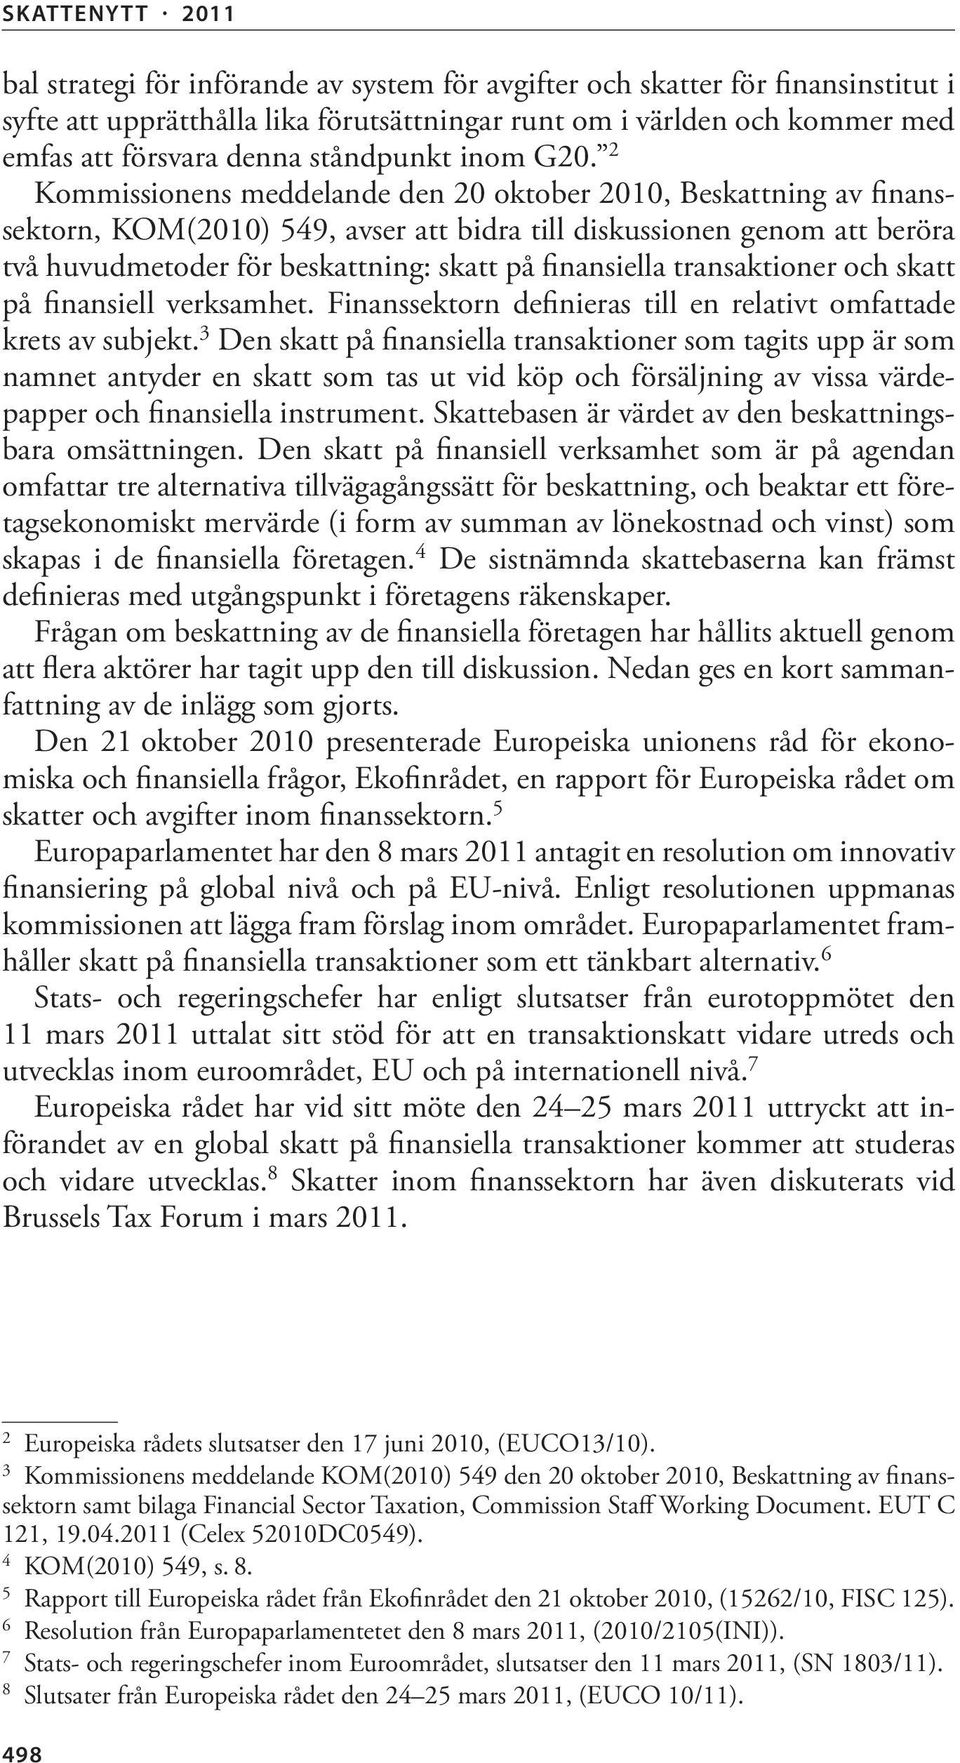 2 Kommissionens meddelande den 20 oktober 2010, Beskattning av finanssektorn, KOM(2010) 549, avser att bidra till diskussionen genom att beröra två huvudmetoder för beskattning: skatt på finansiella